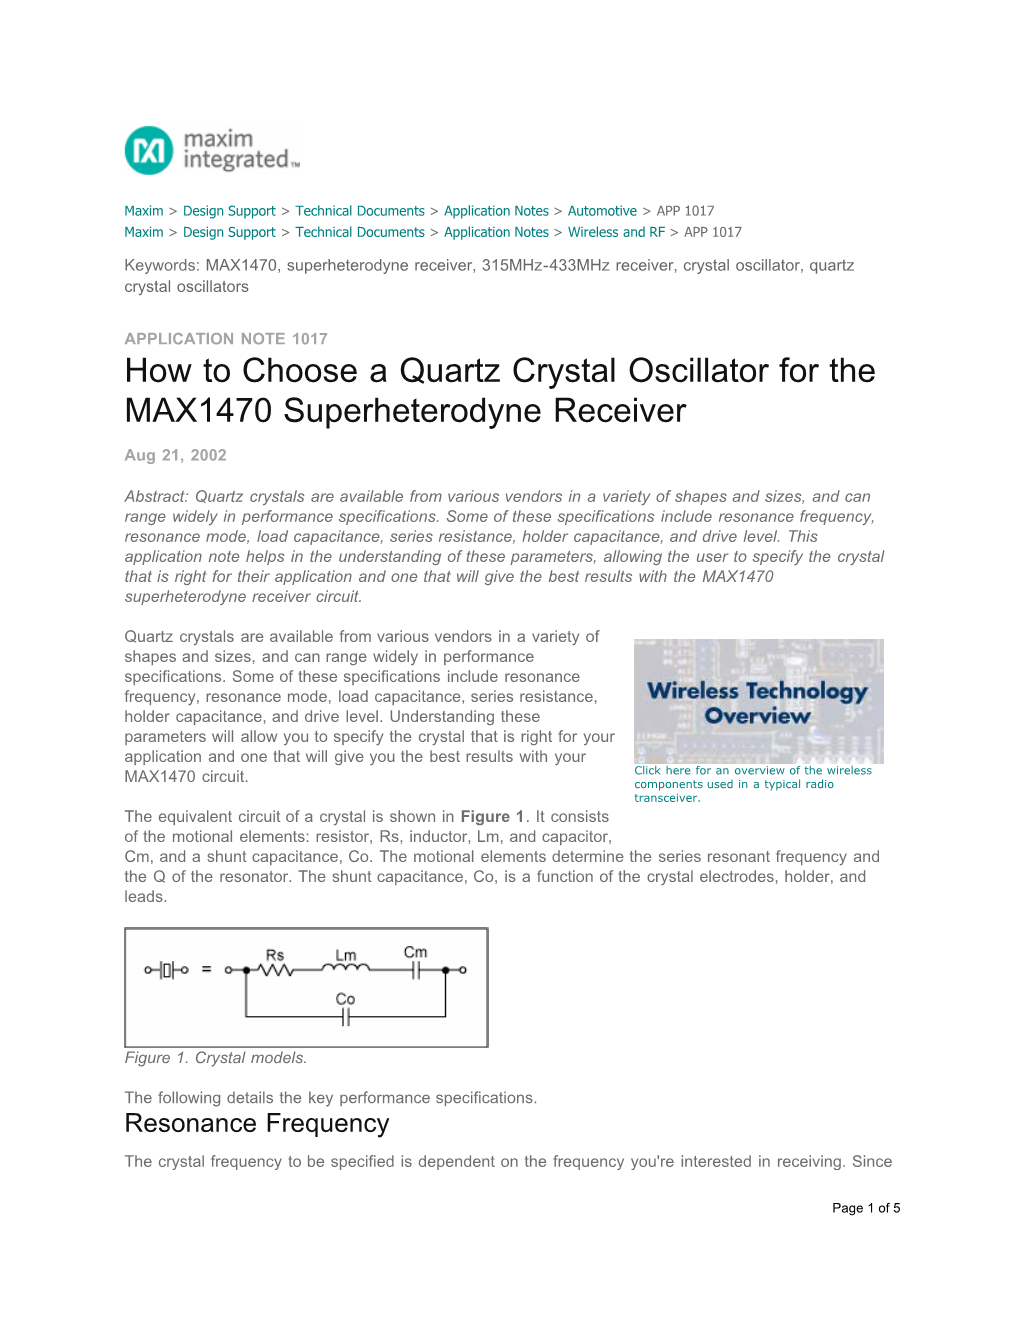 How to Choose a Quartz Crystal Oscillator for the MAX1470 Superheterodyne Receiver